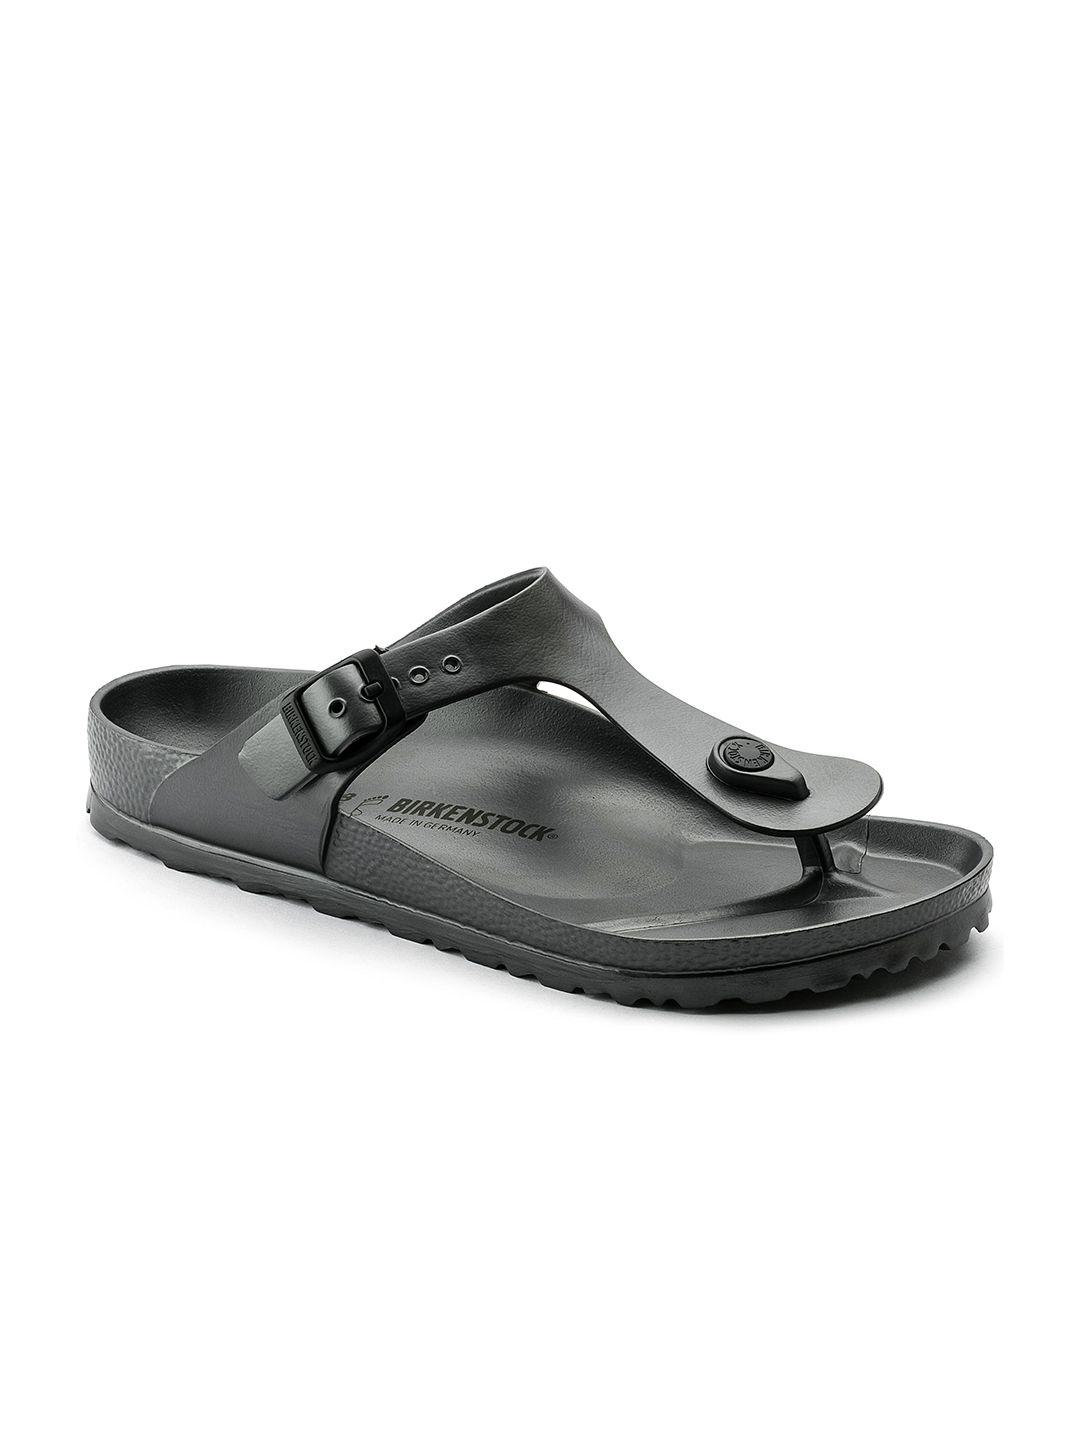 birkenstock unisex gunmetal-toned gizeh eva solid regular width comfort sandals